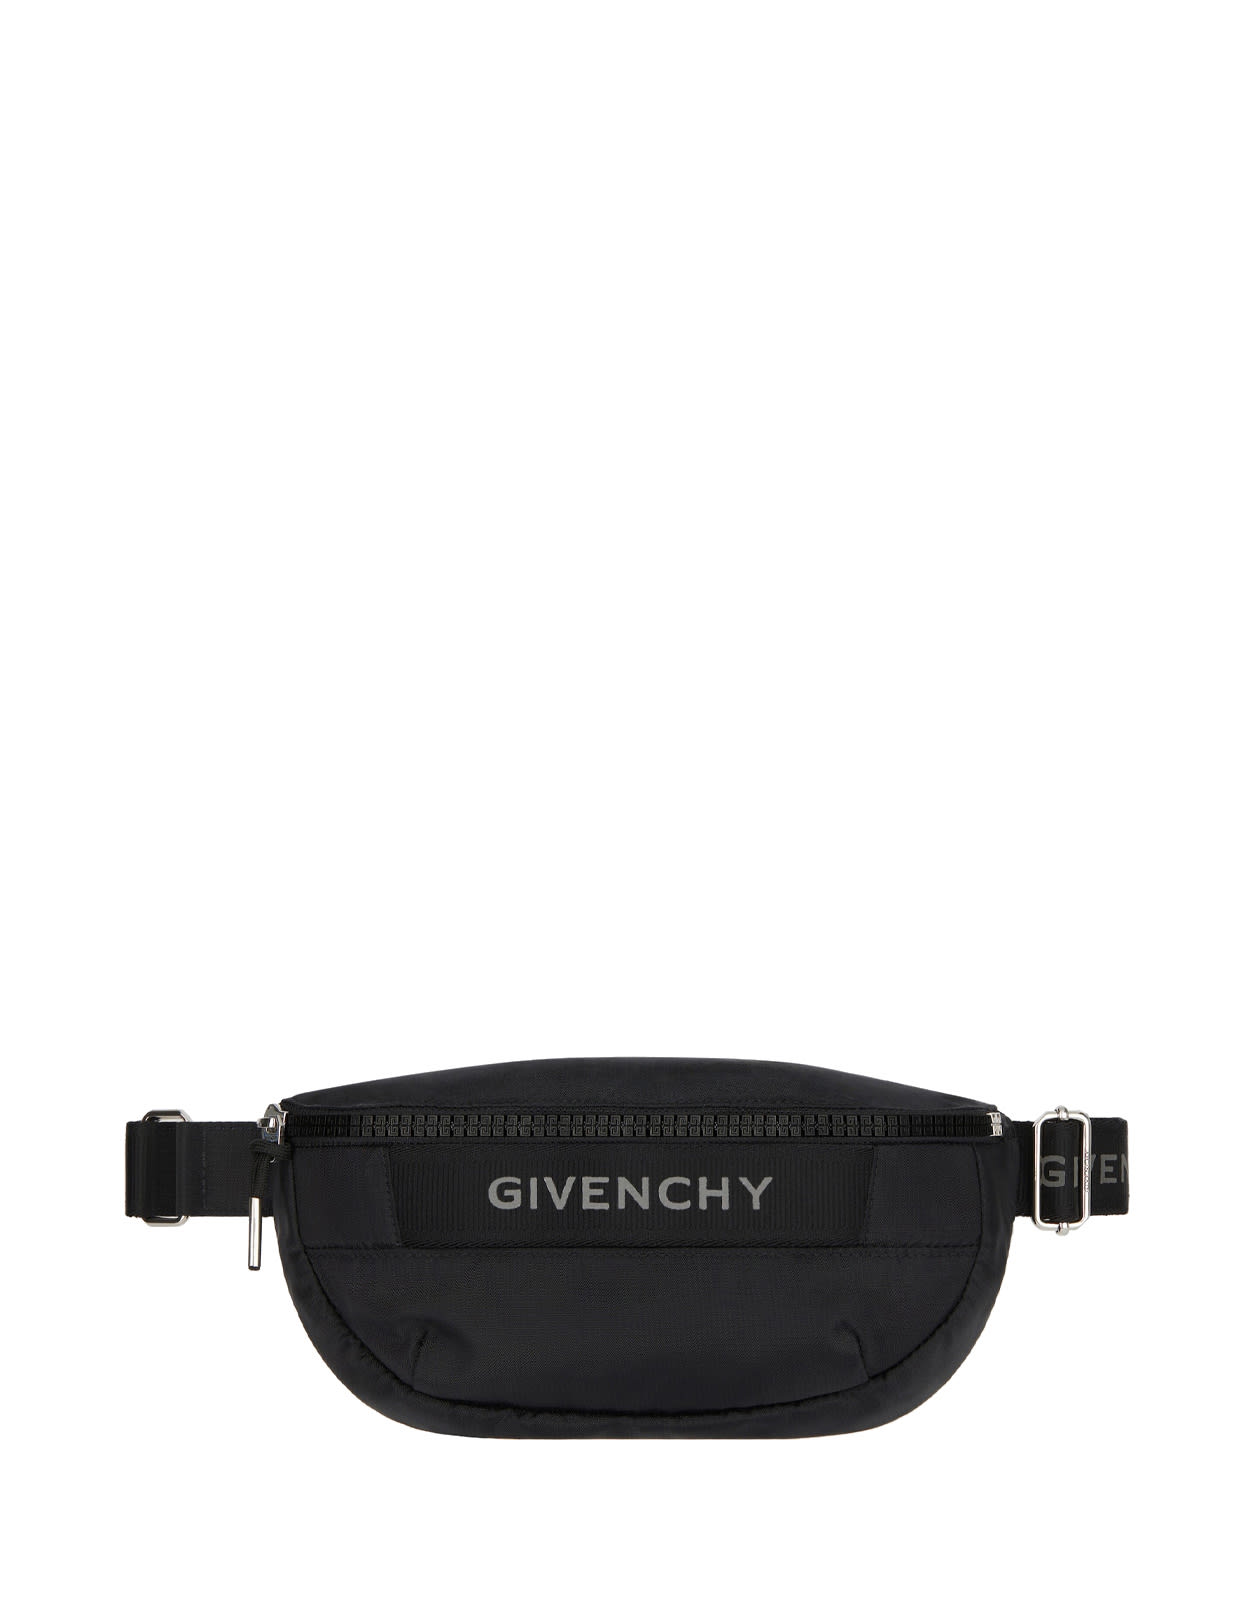 Givenchy G-trek Waist Bag In Black Nylon